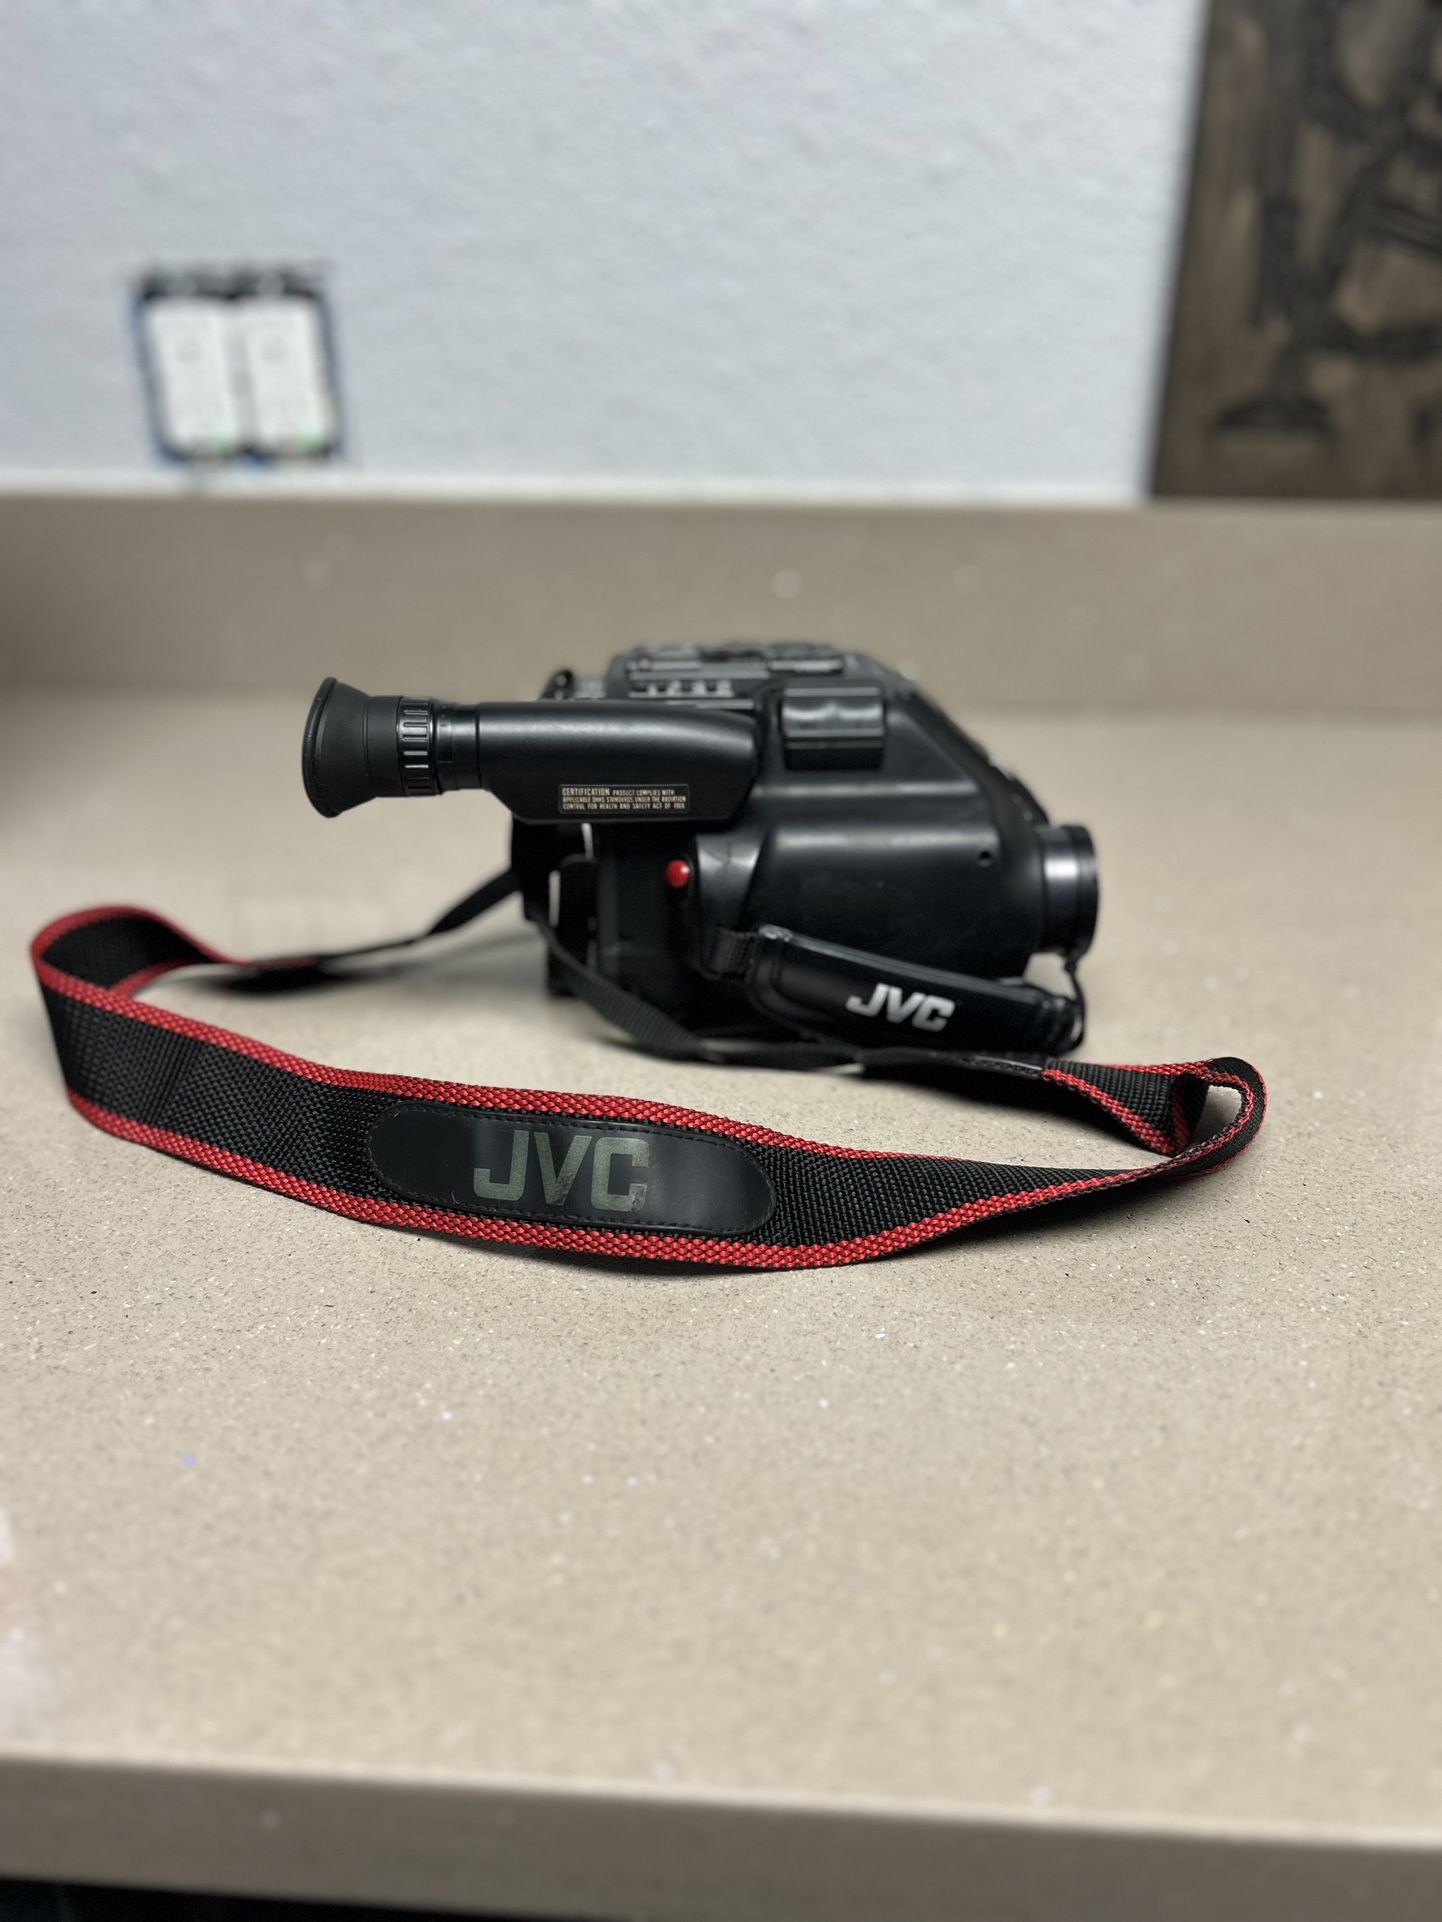 Jvs Vhs Camera